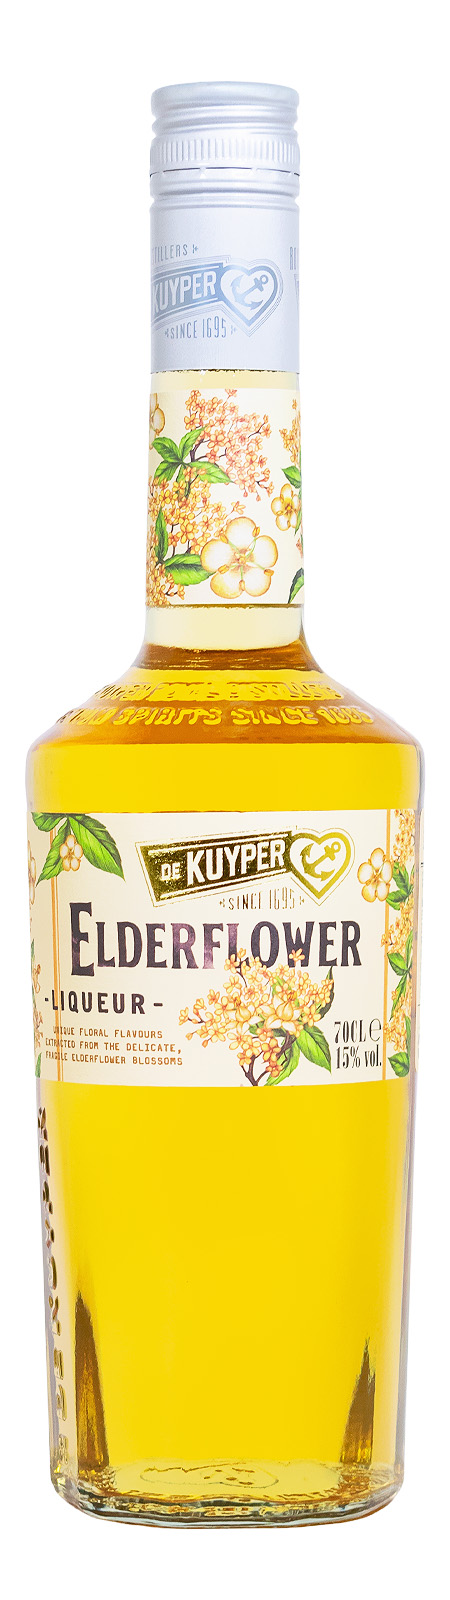 De Kuyper Elderflower - 0,7L 15% vol